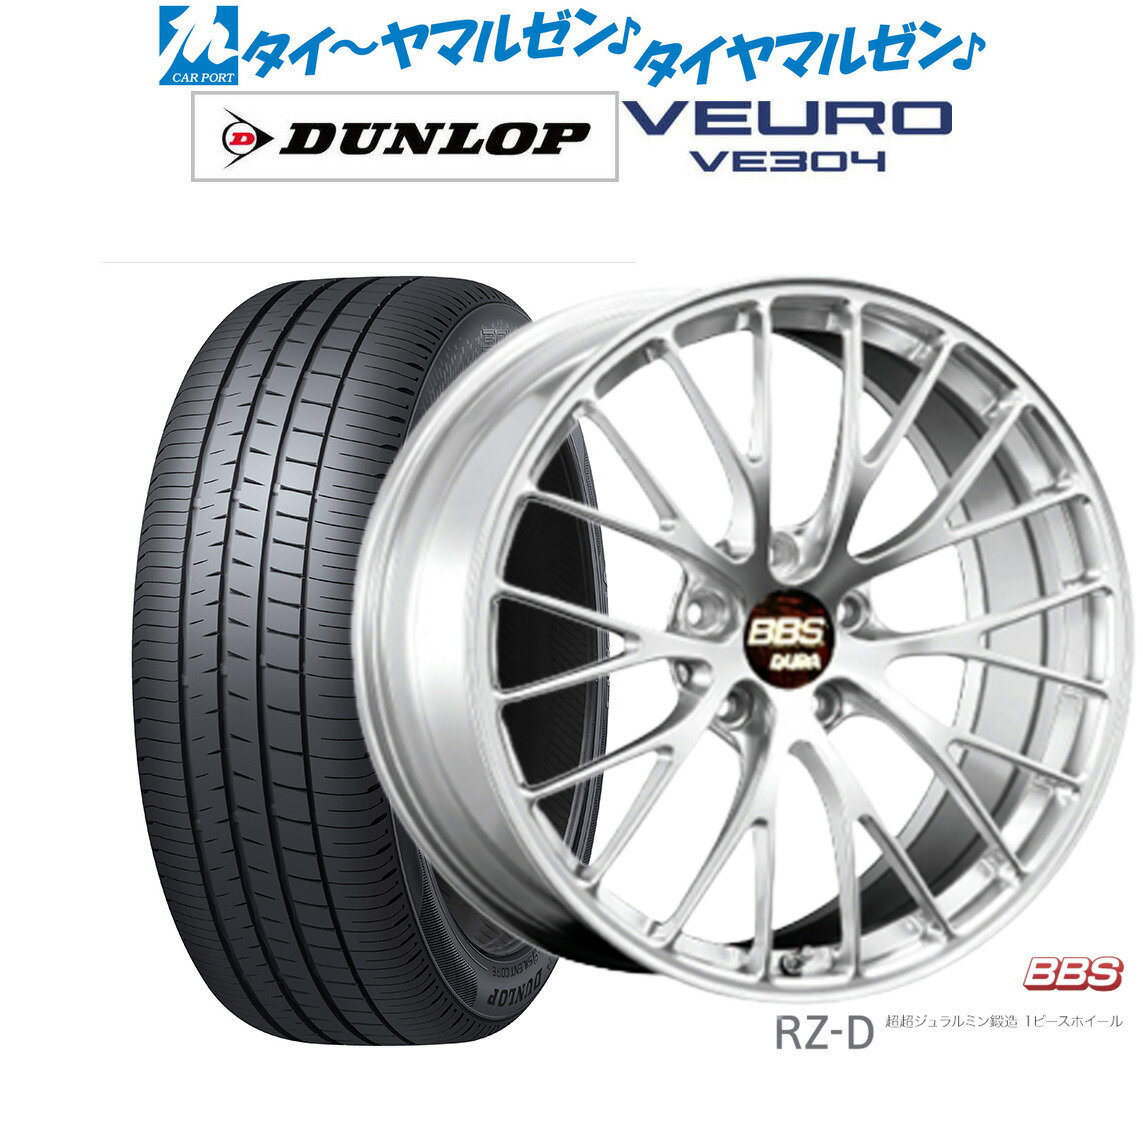 新品 サマータイヤ ホイール4本セットBBS JAPAN RZ-D19インチ 8.5Jダンロップ VEURO ビューロ VE304235/40R19